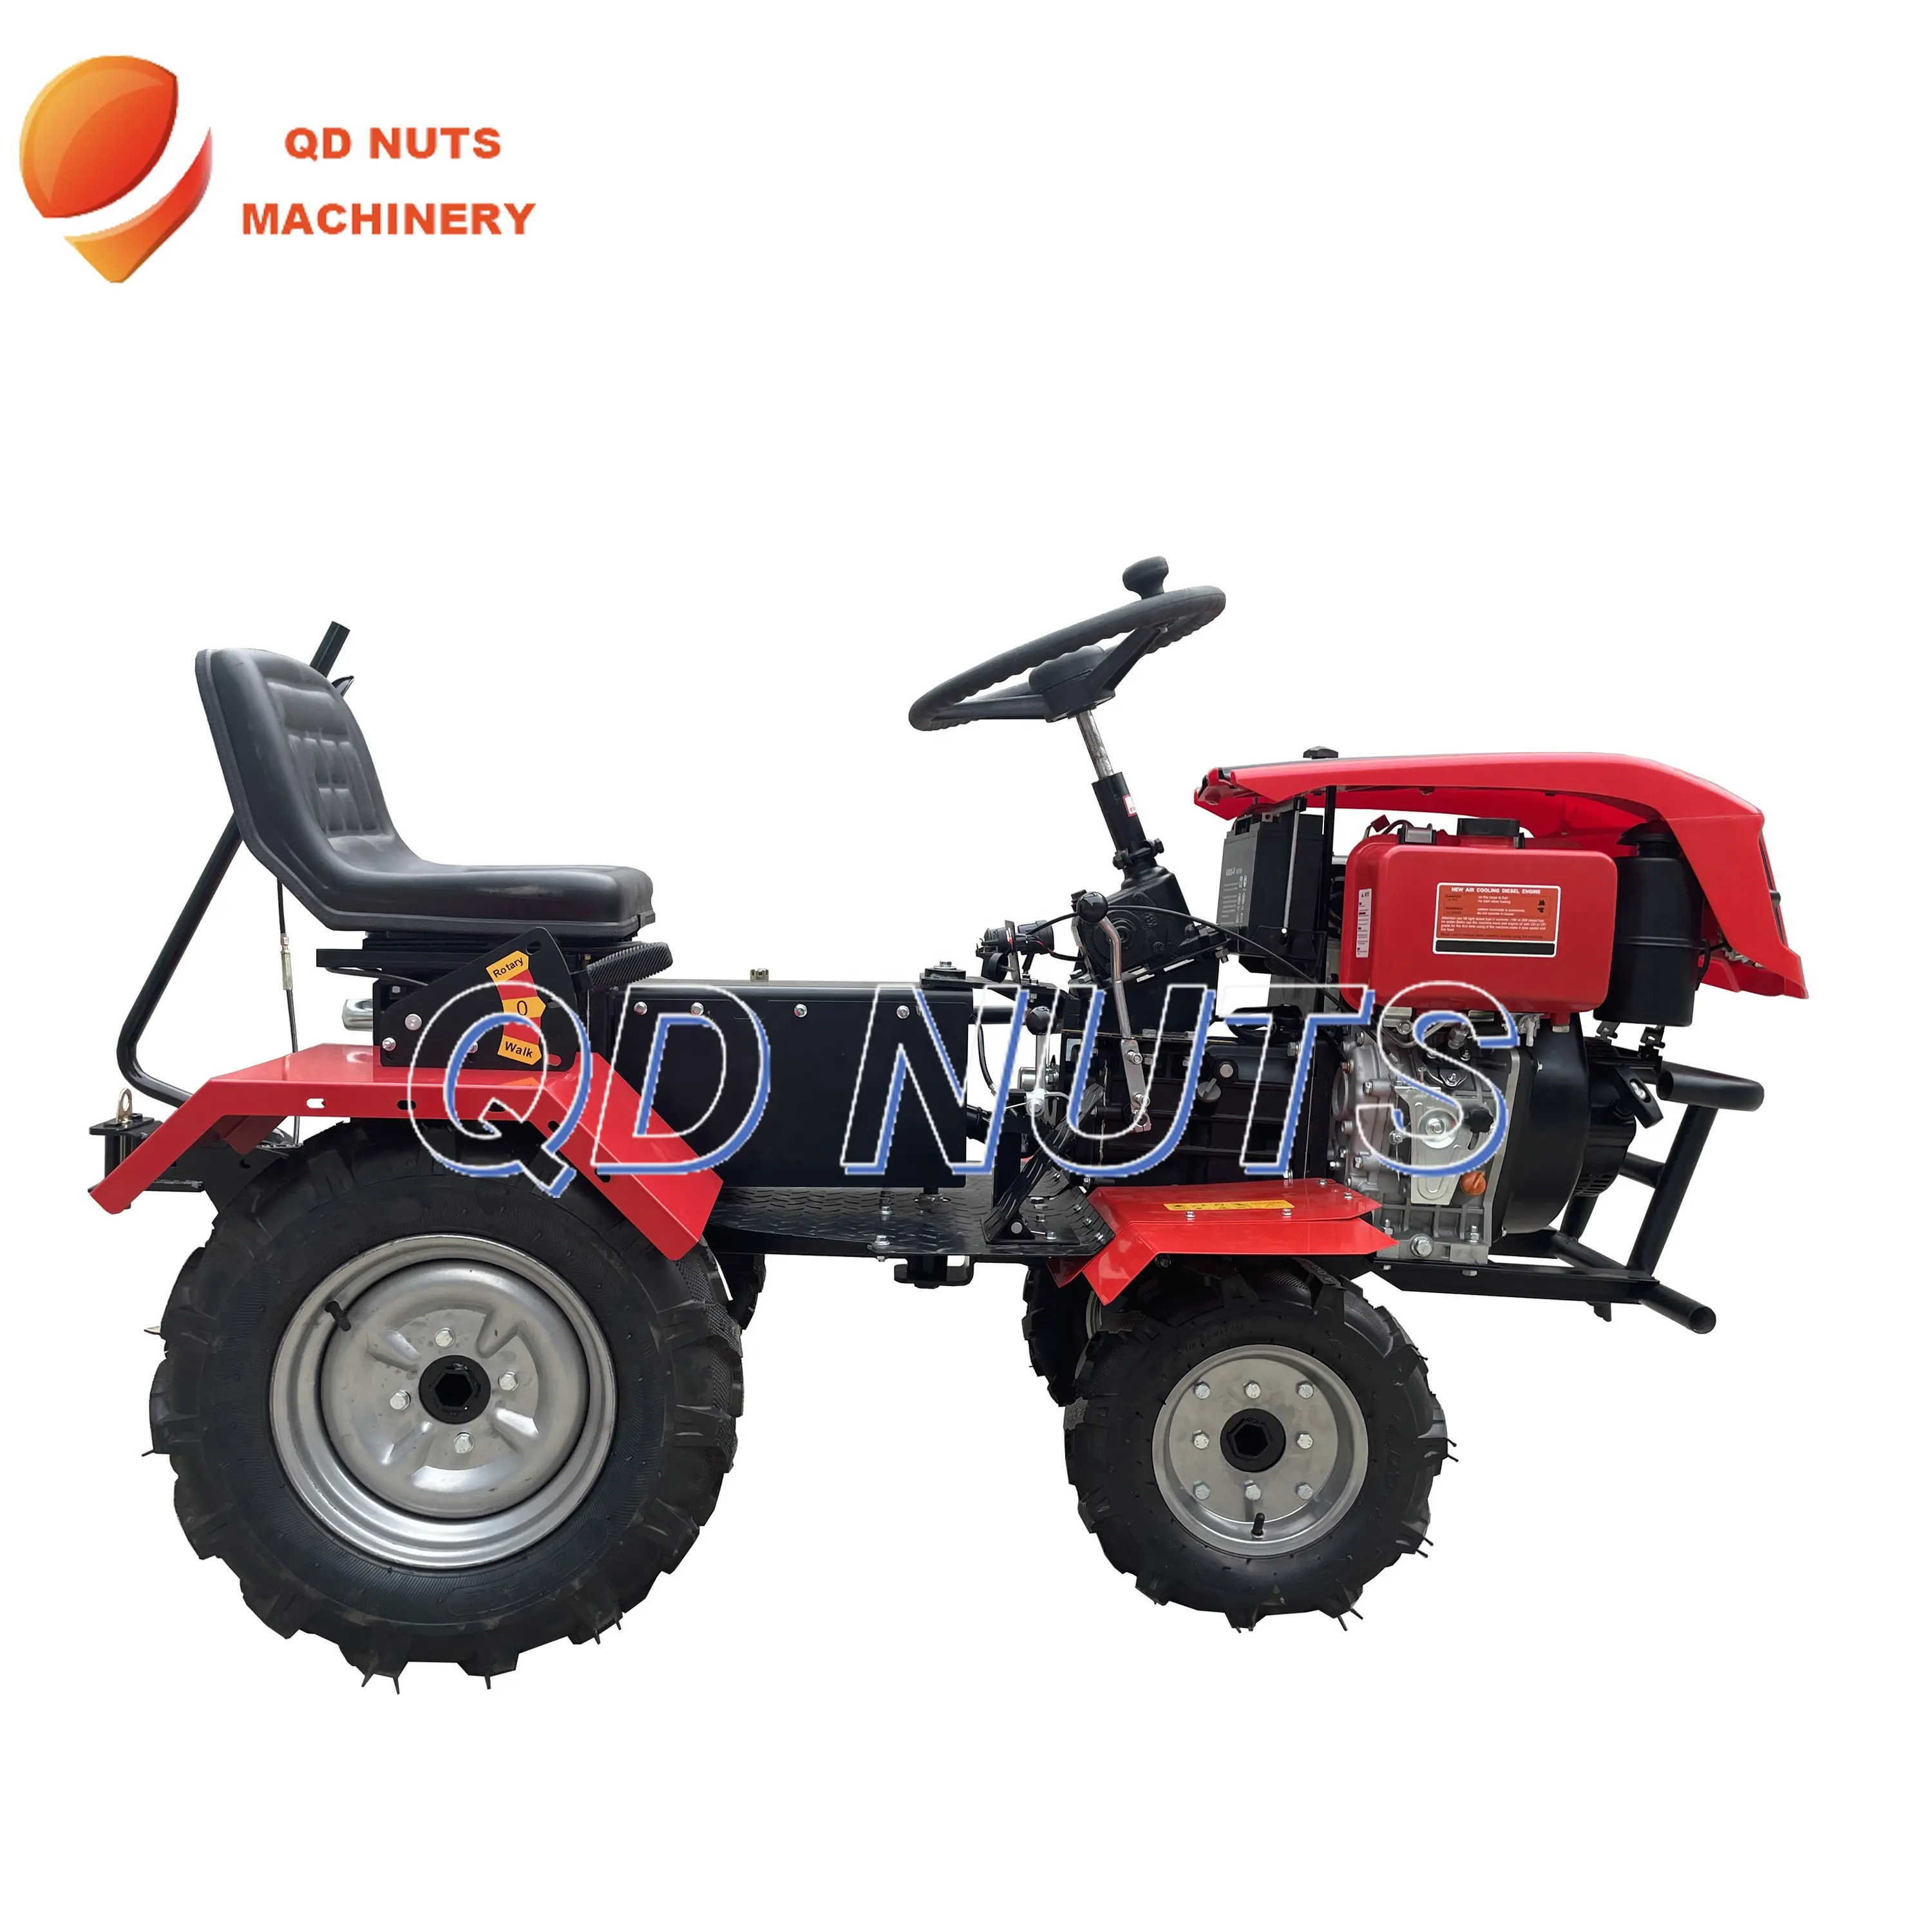 Продвижение, небольшой китайский трактор, сельскохозяйственный ходячий трактор 4x4 для сельского хозяйства и сада, различные насадки